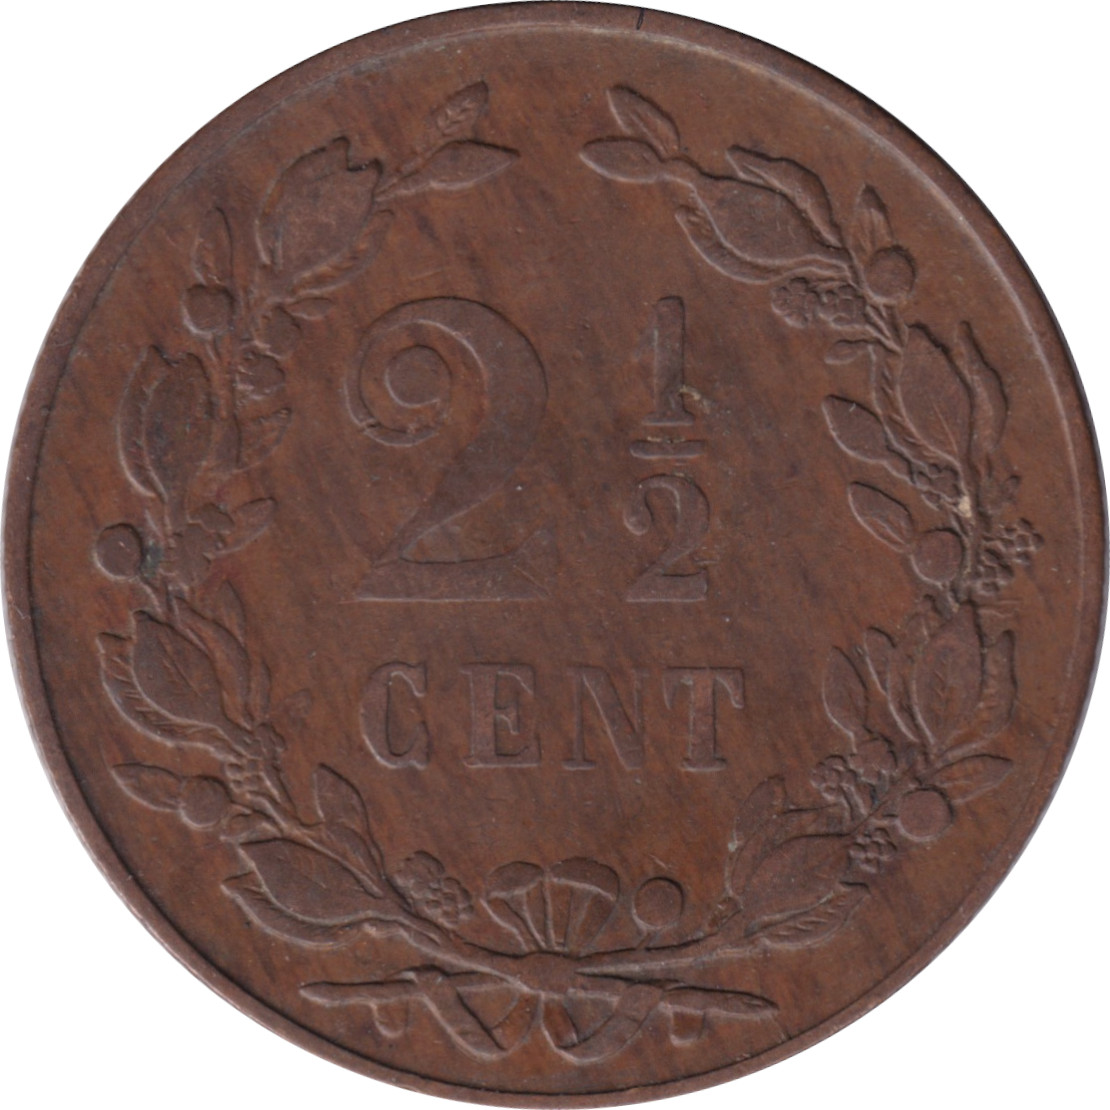 2 1/2 cents - Lion héraldique - Petites branches